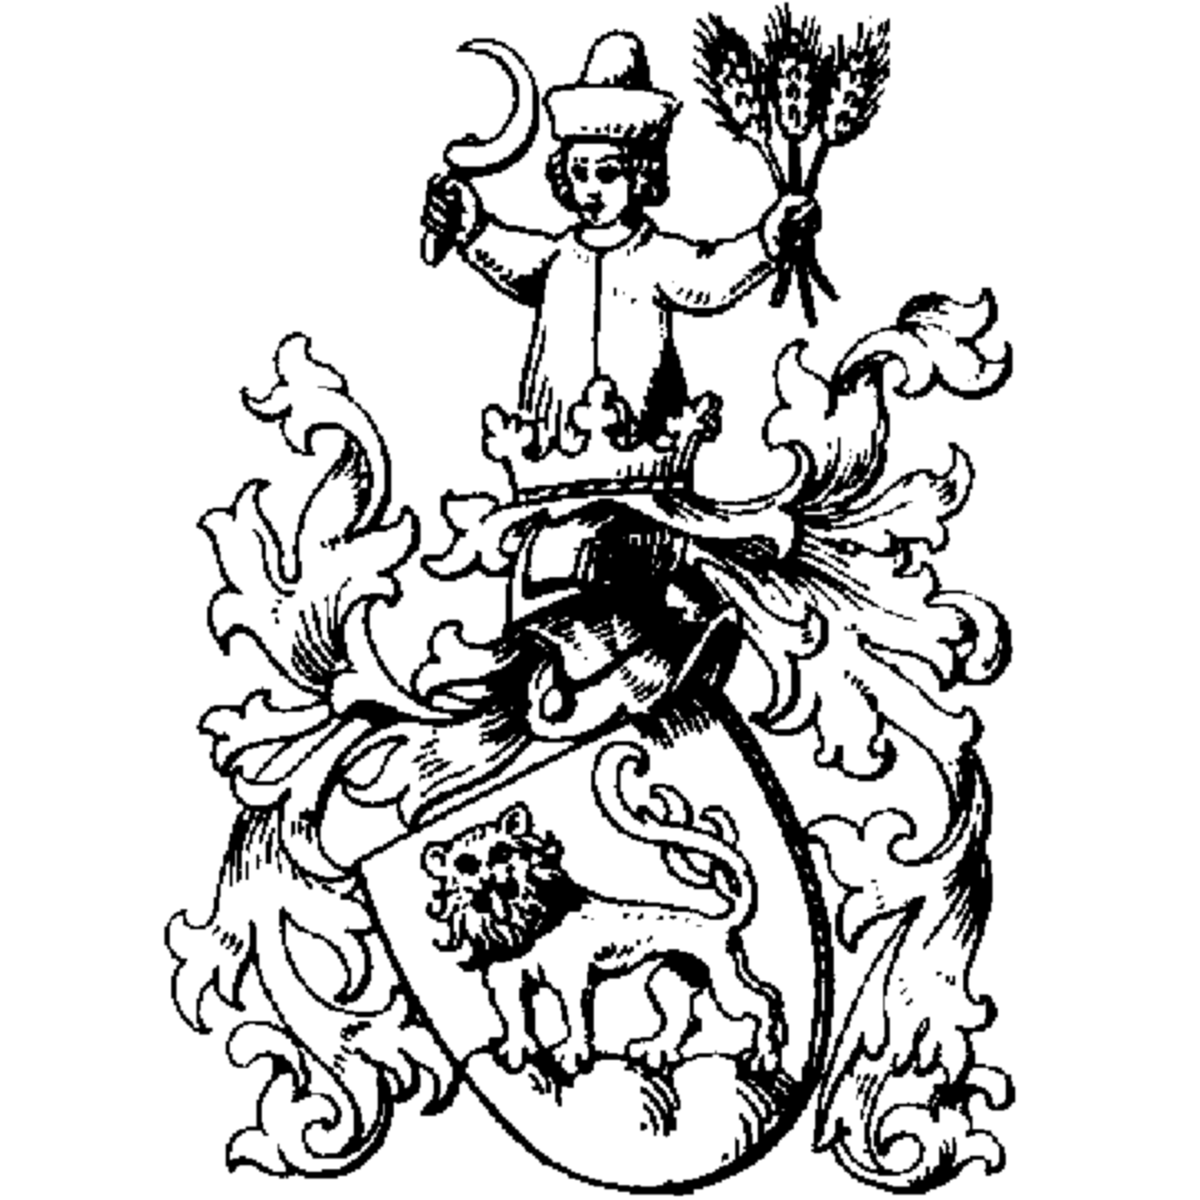 Coat of arms of family Bopfinger